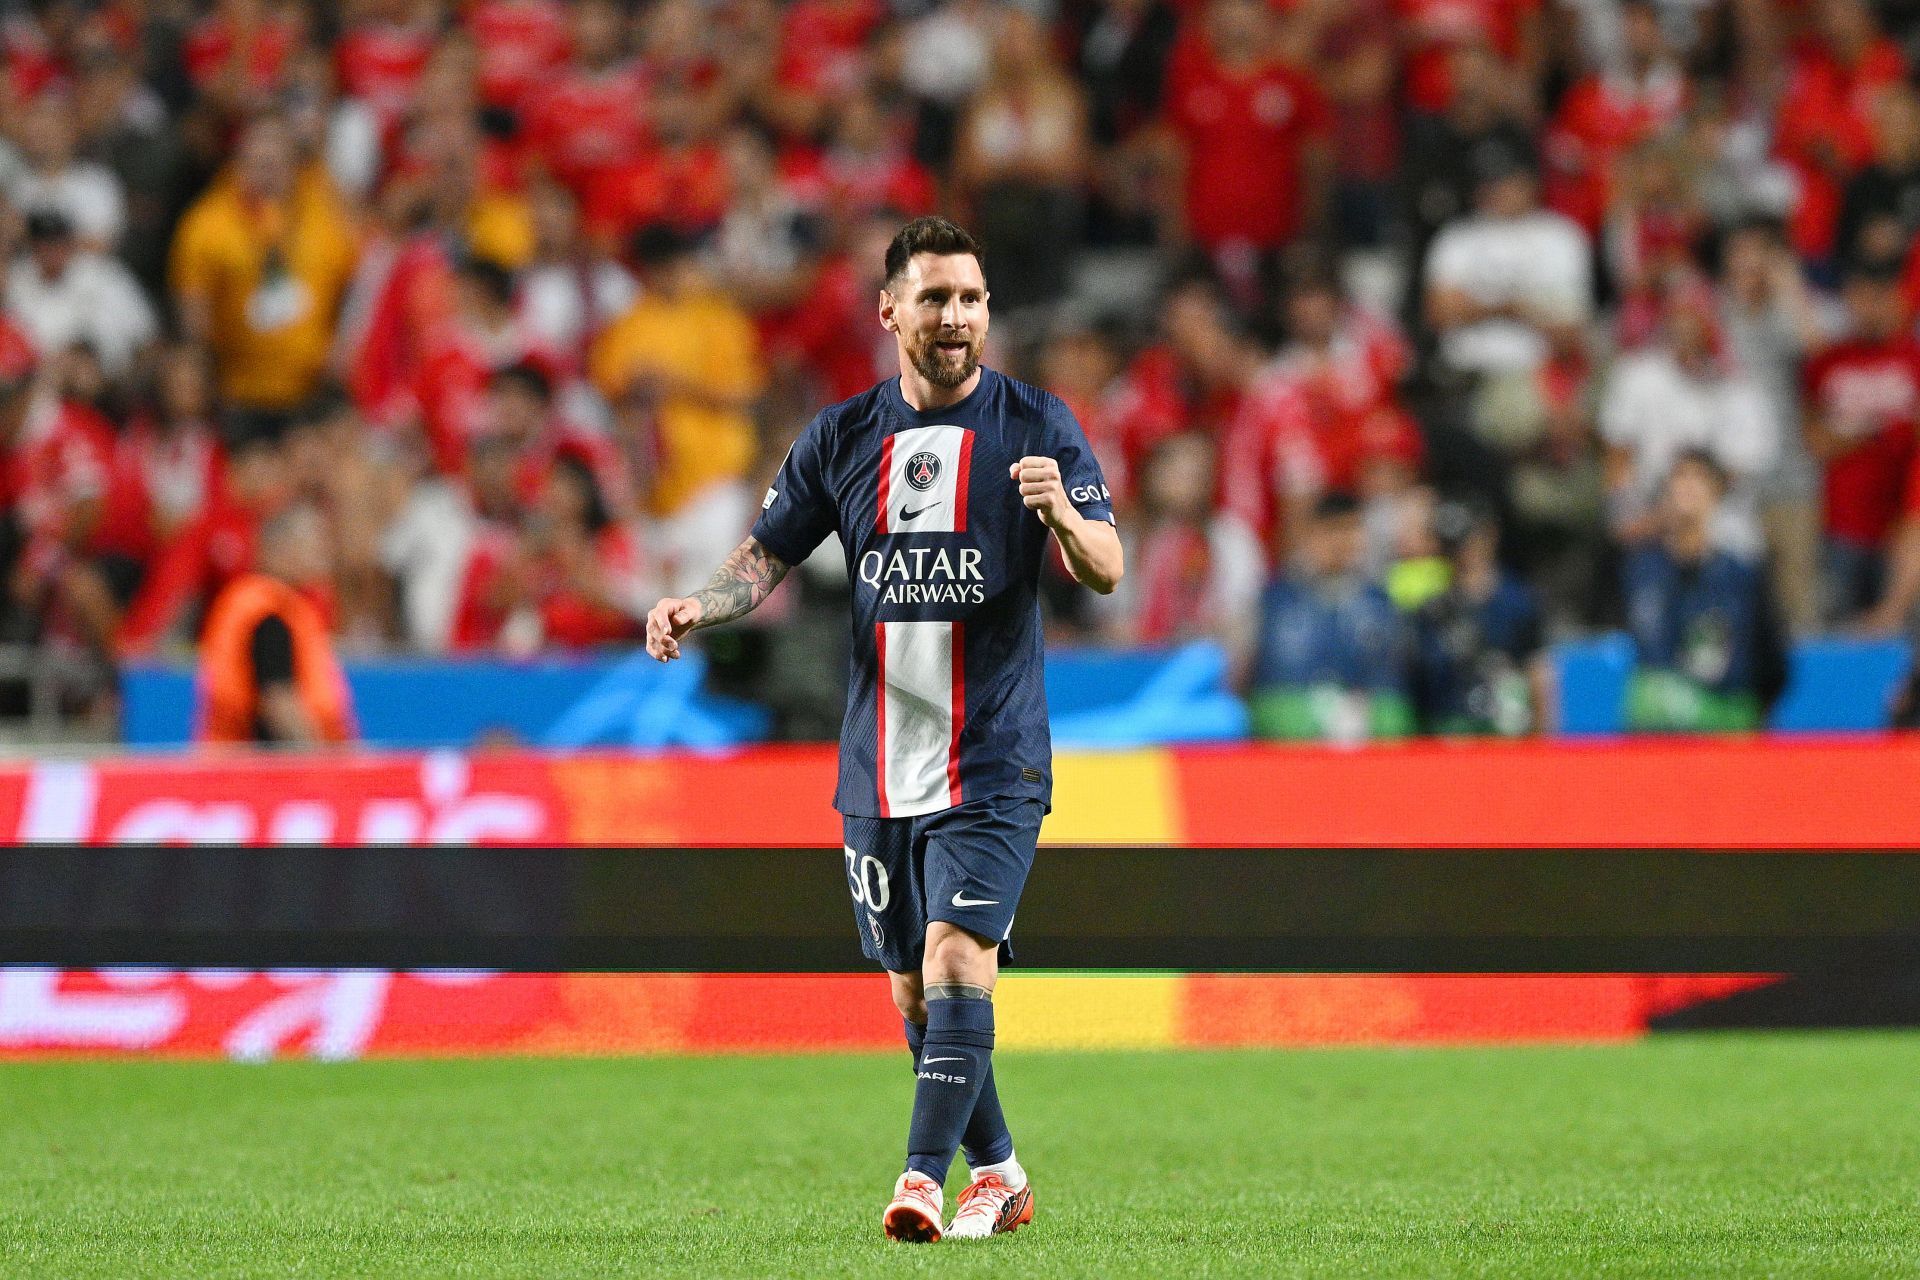 PSG attacker Lionel Messi